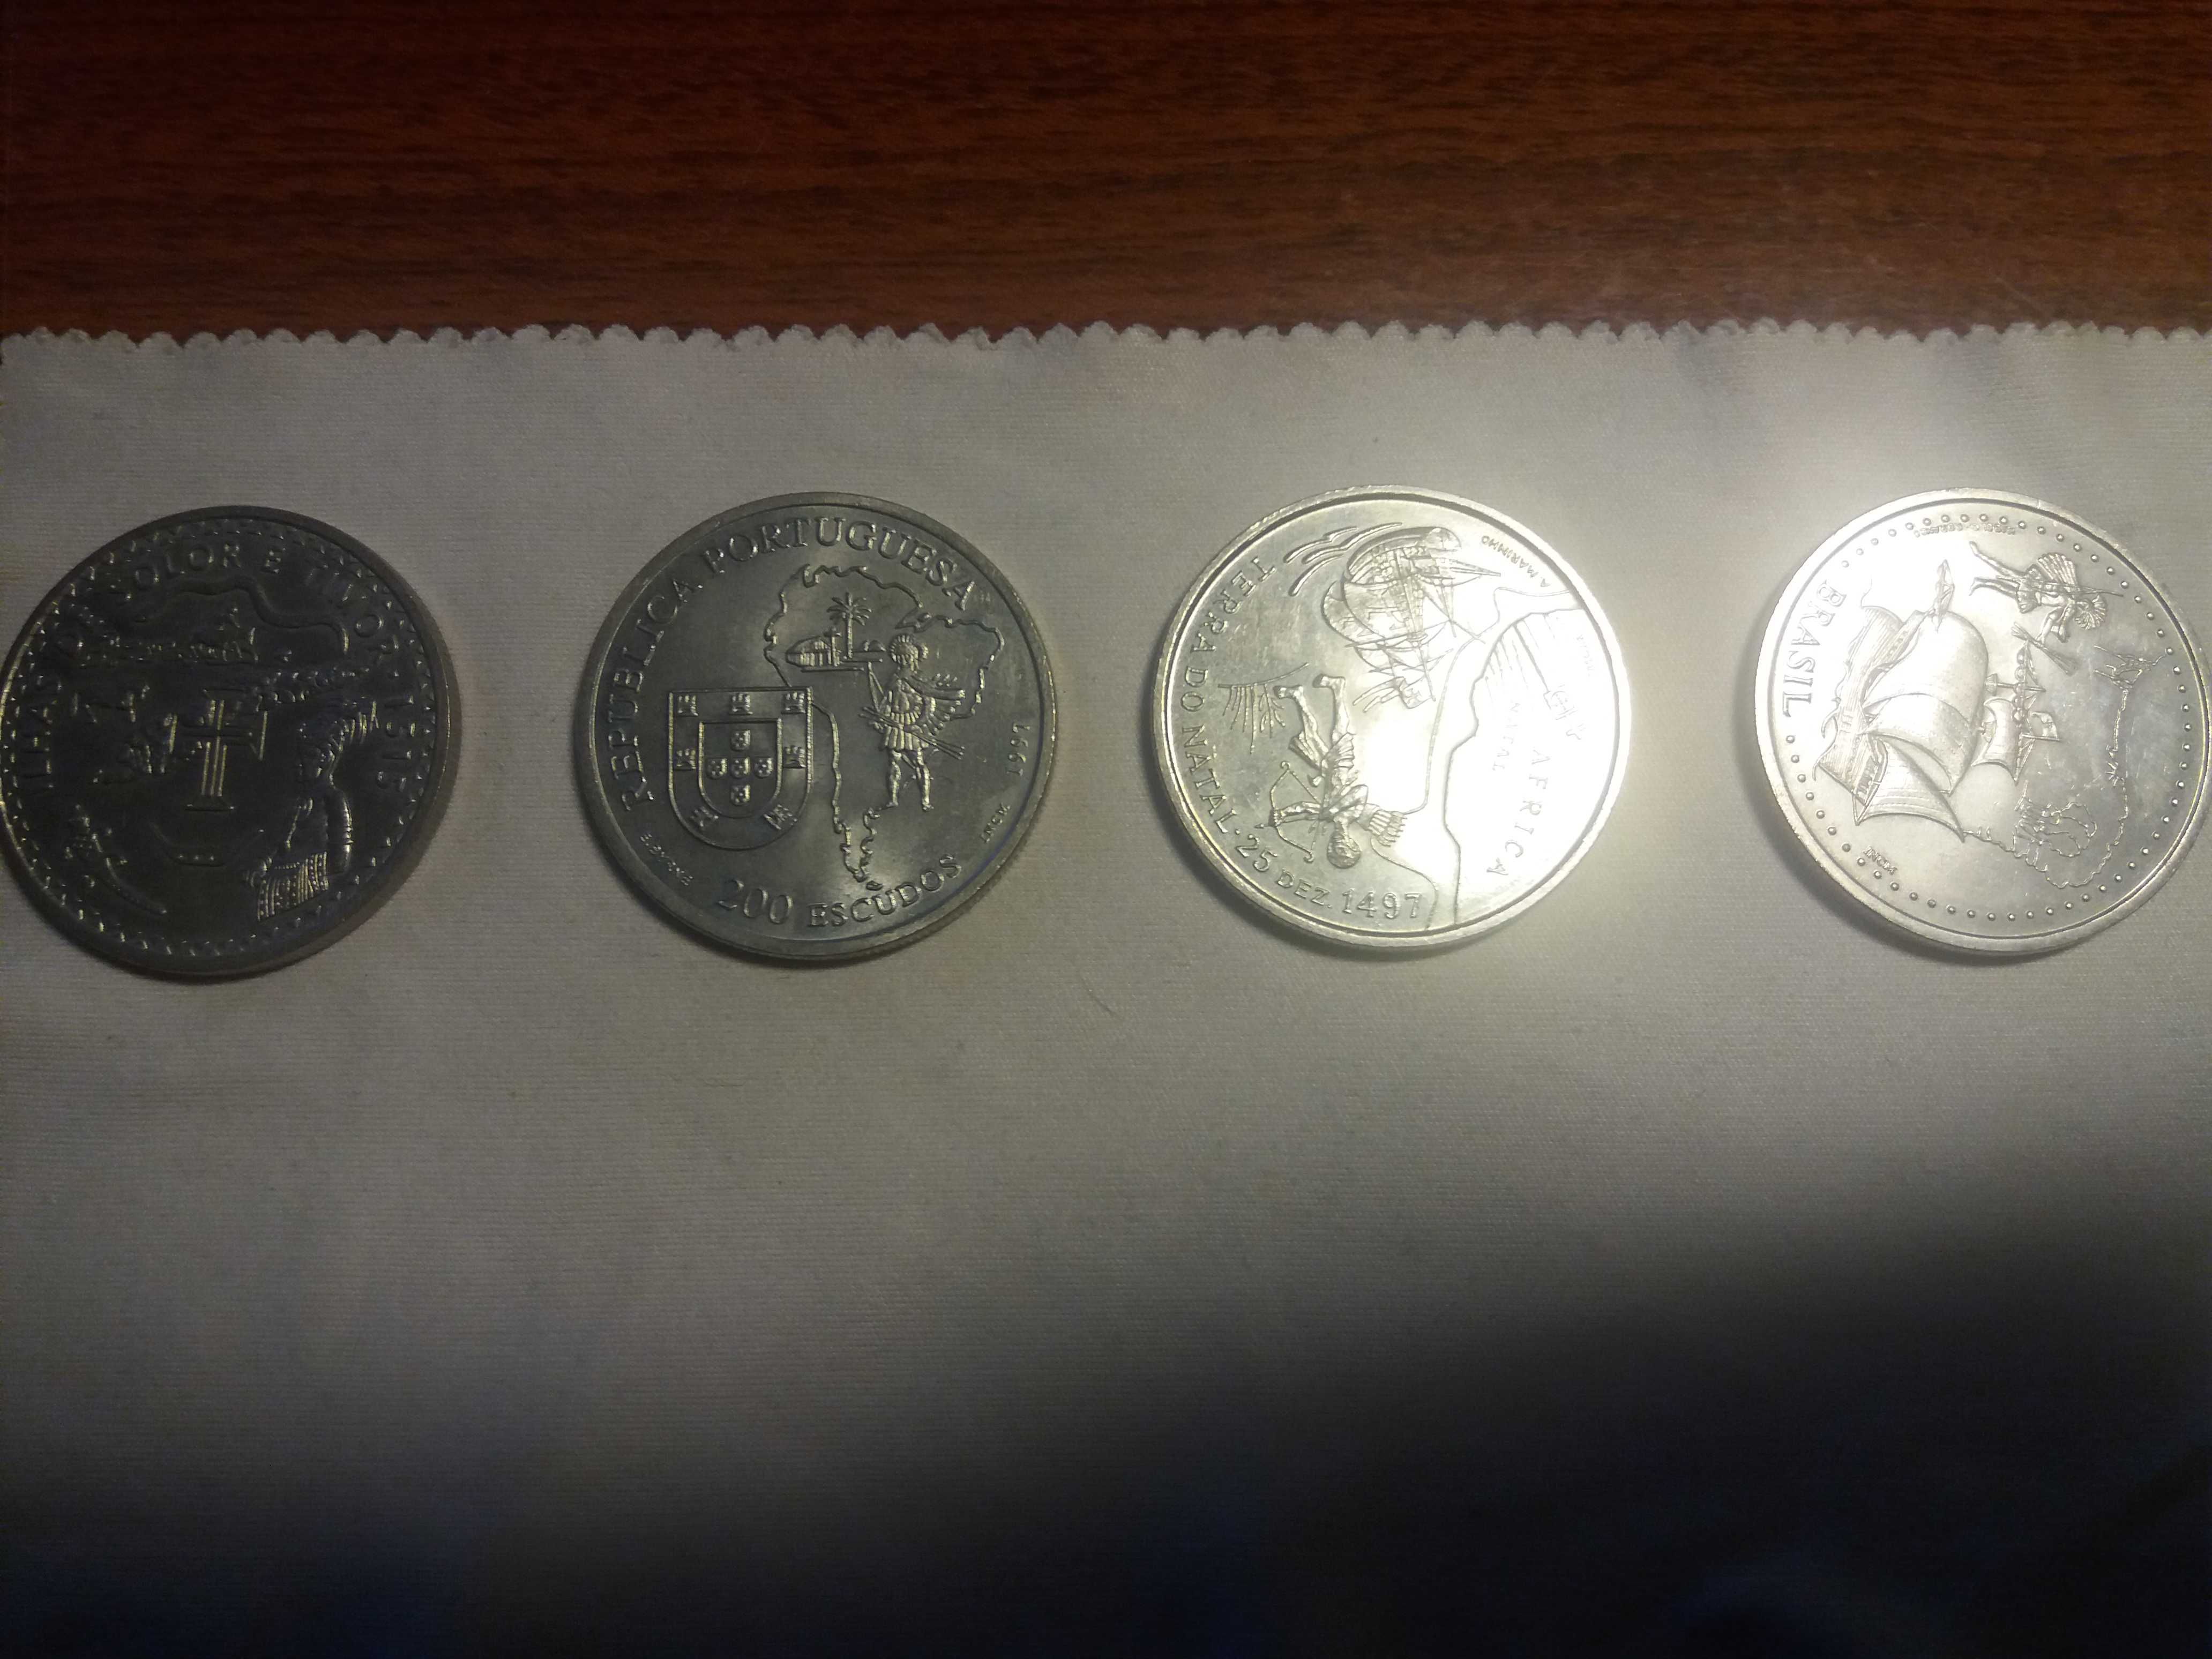 Moedas comemorativas Portuguesas/quatro moedas